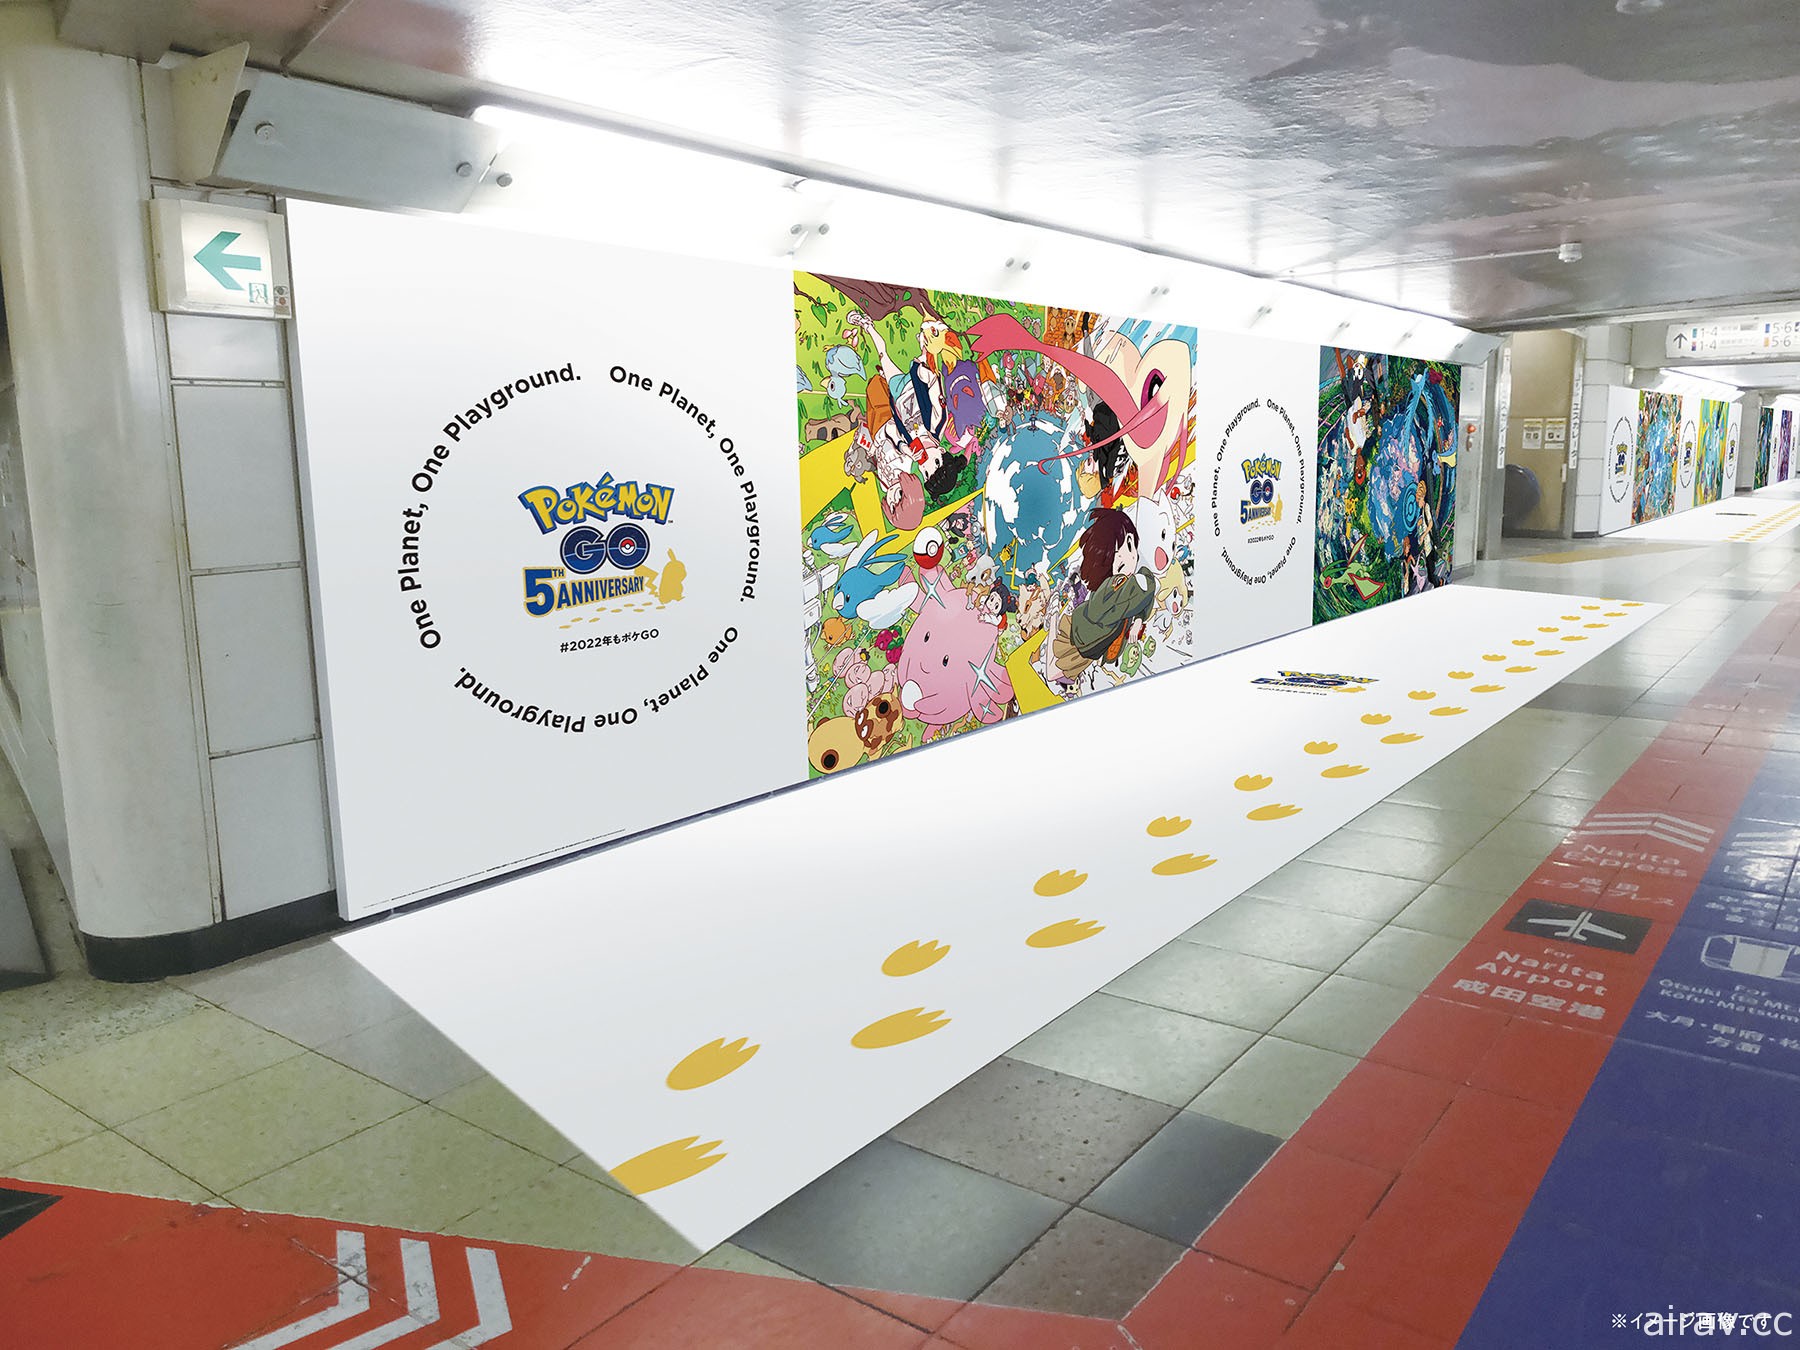 《Pokemon GO》纪念 5 周年于日本各车站展示全景透视插画广告